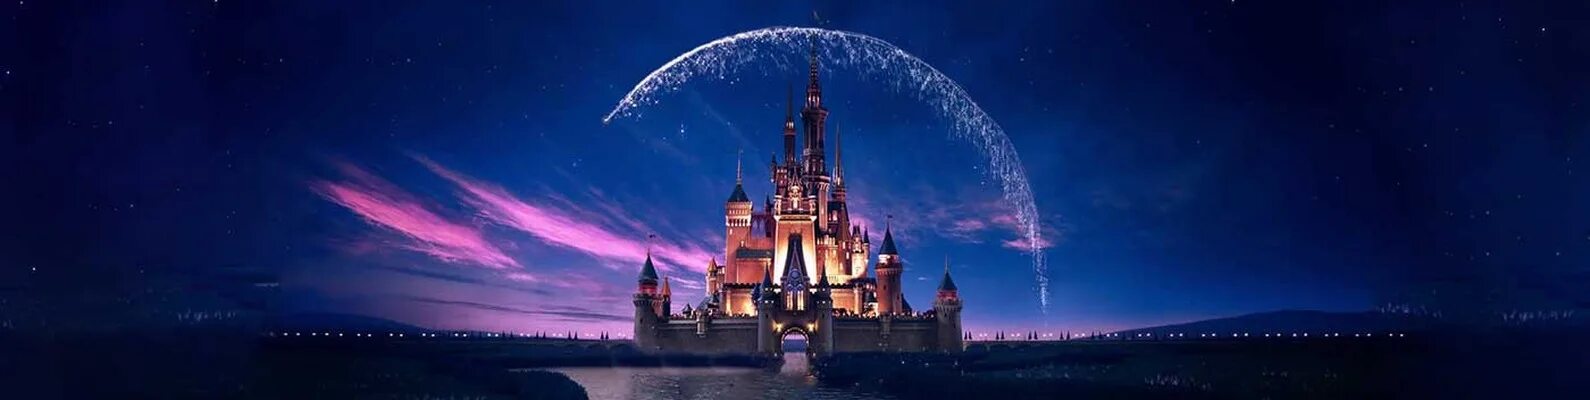 Клипы дисней. Замок Уолт Дисней Пикчерз. Замок Дисней крупный план. Walt Disney pictures logo 2011. Walt Disney pictures Trailer logos.